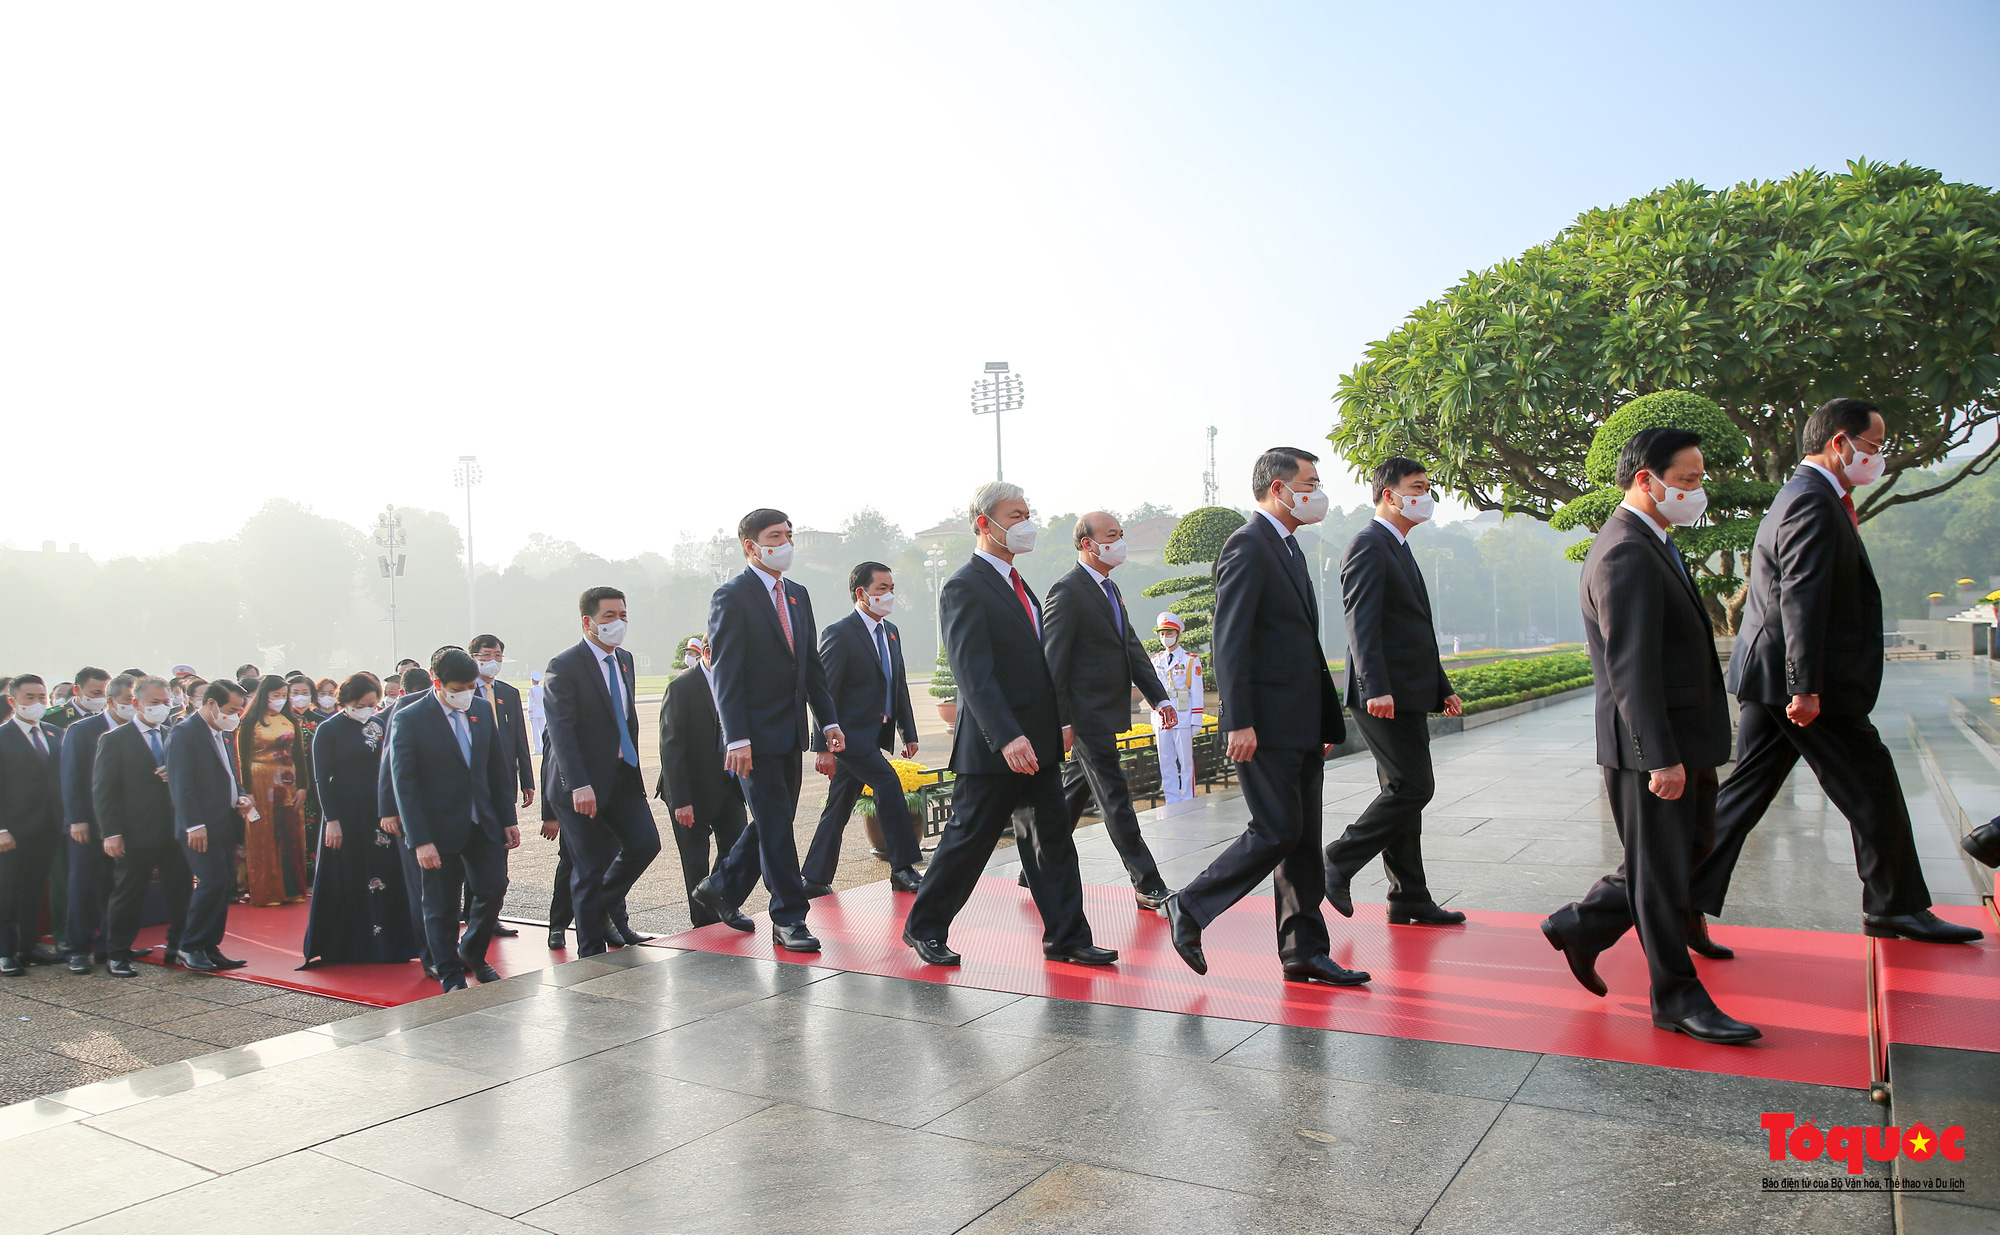 Đại biểu viếng Chủ tịch Hồ Chí Minh trước khai mạc kỳ họp thứ 2 Quốc hội khóa XV - Ảnh 7.